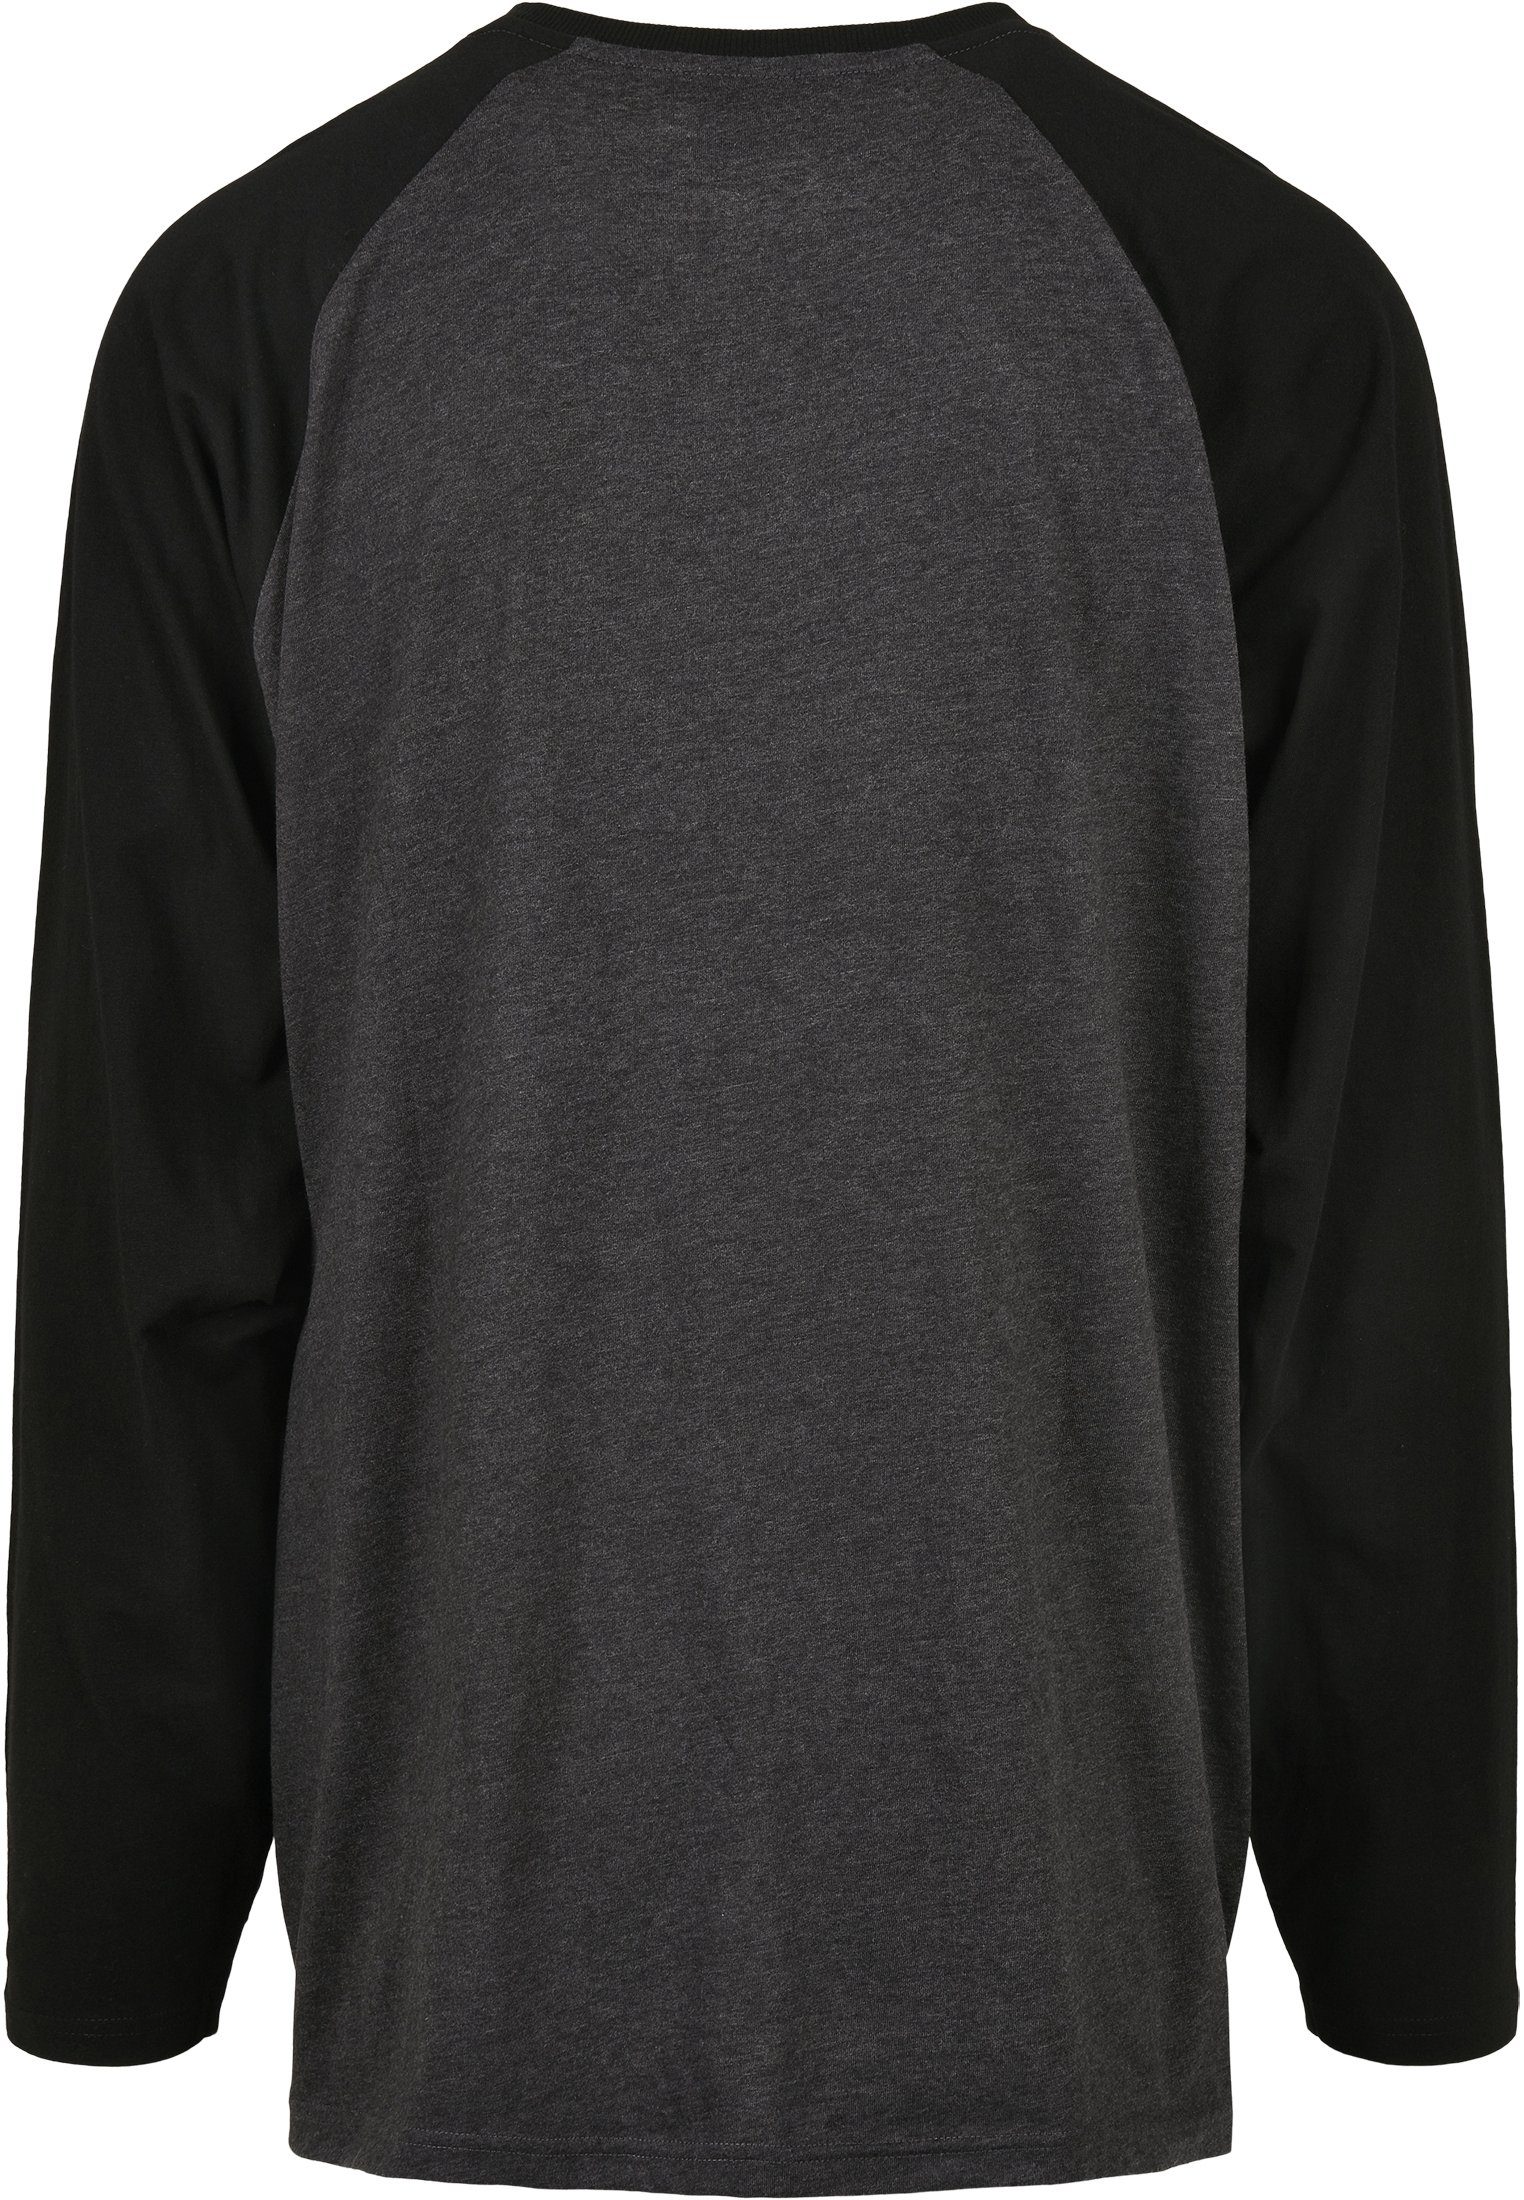 Männer Raglan LS (1-tlg) T-Shirt Contrast CLASSICS charcoal/black URBAN